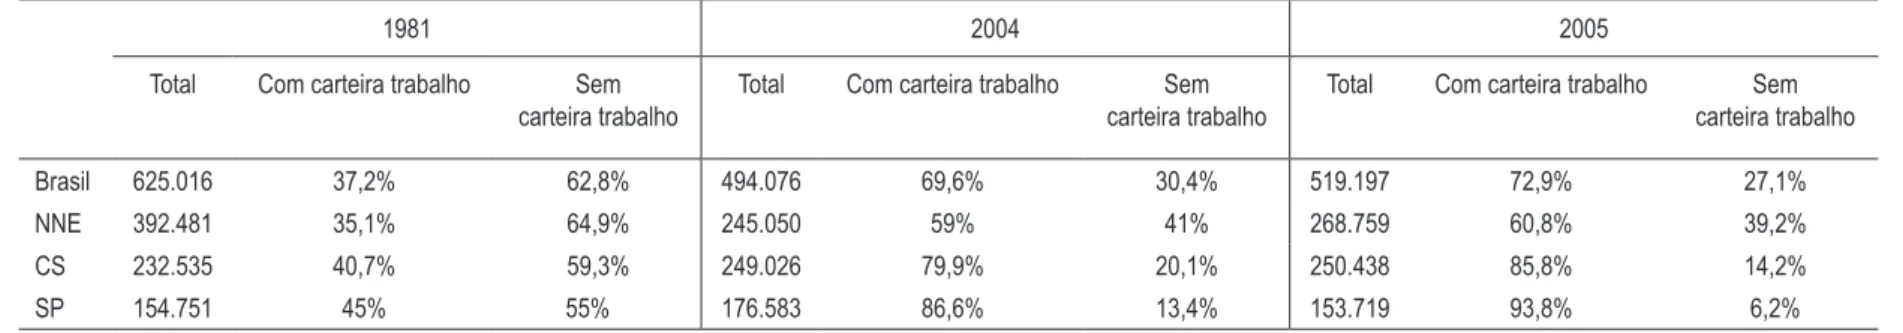 tabela 6 – cana-de-açúcar: evolução do salário médio*  – 1981 e 2005